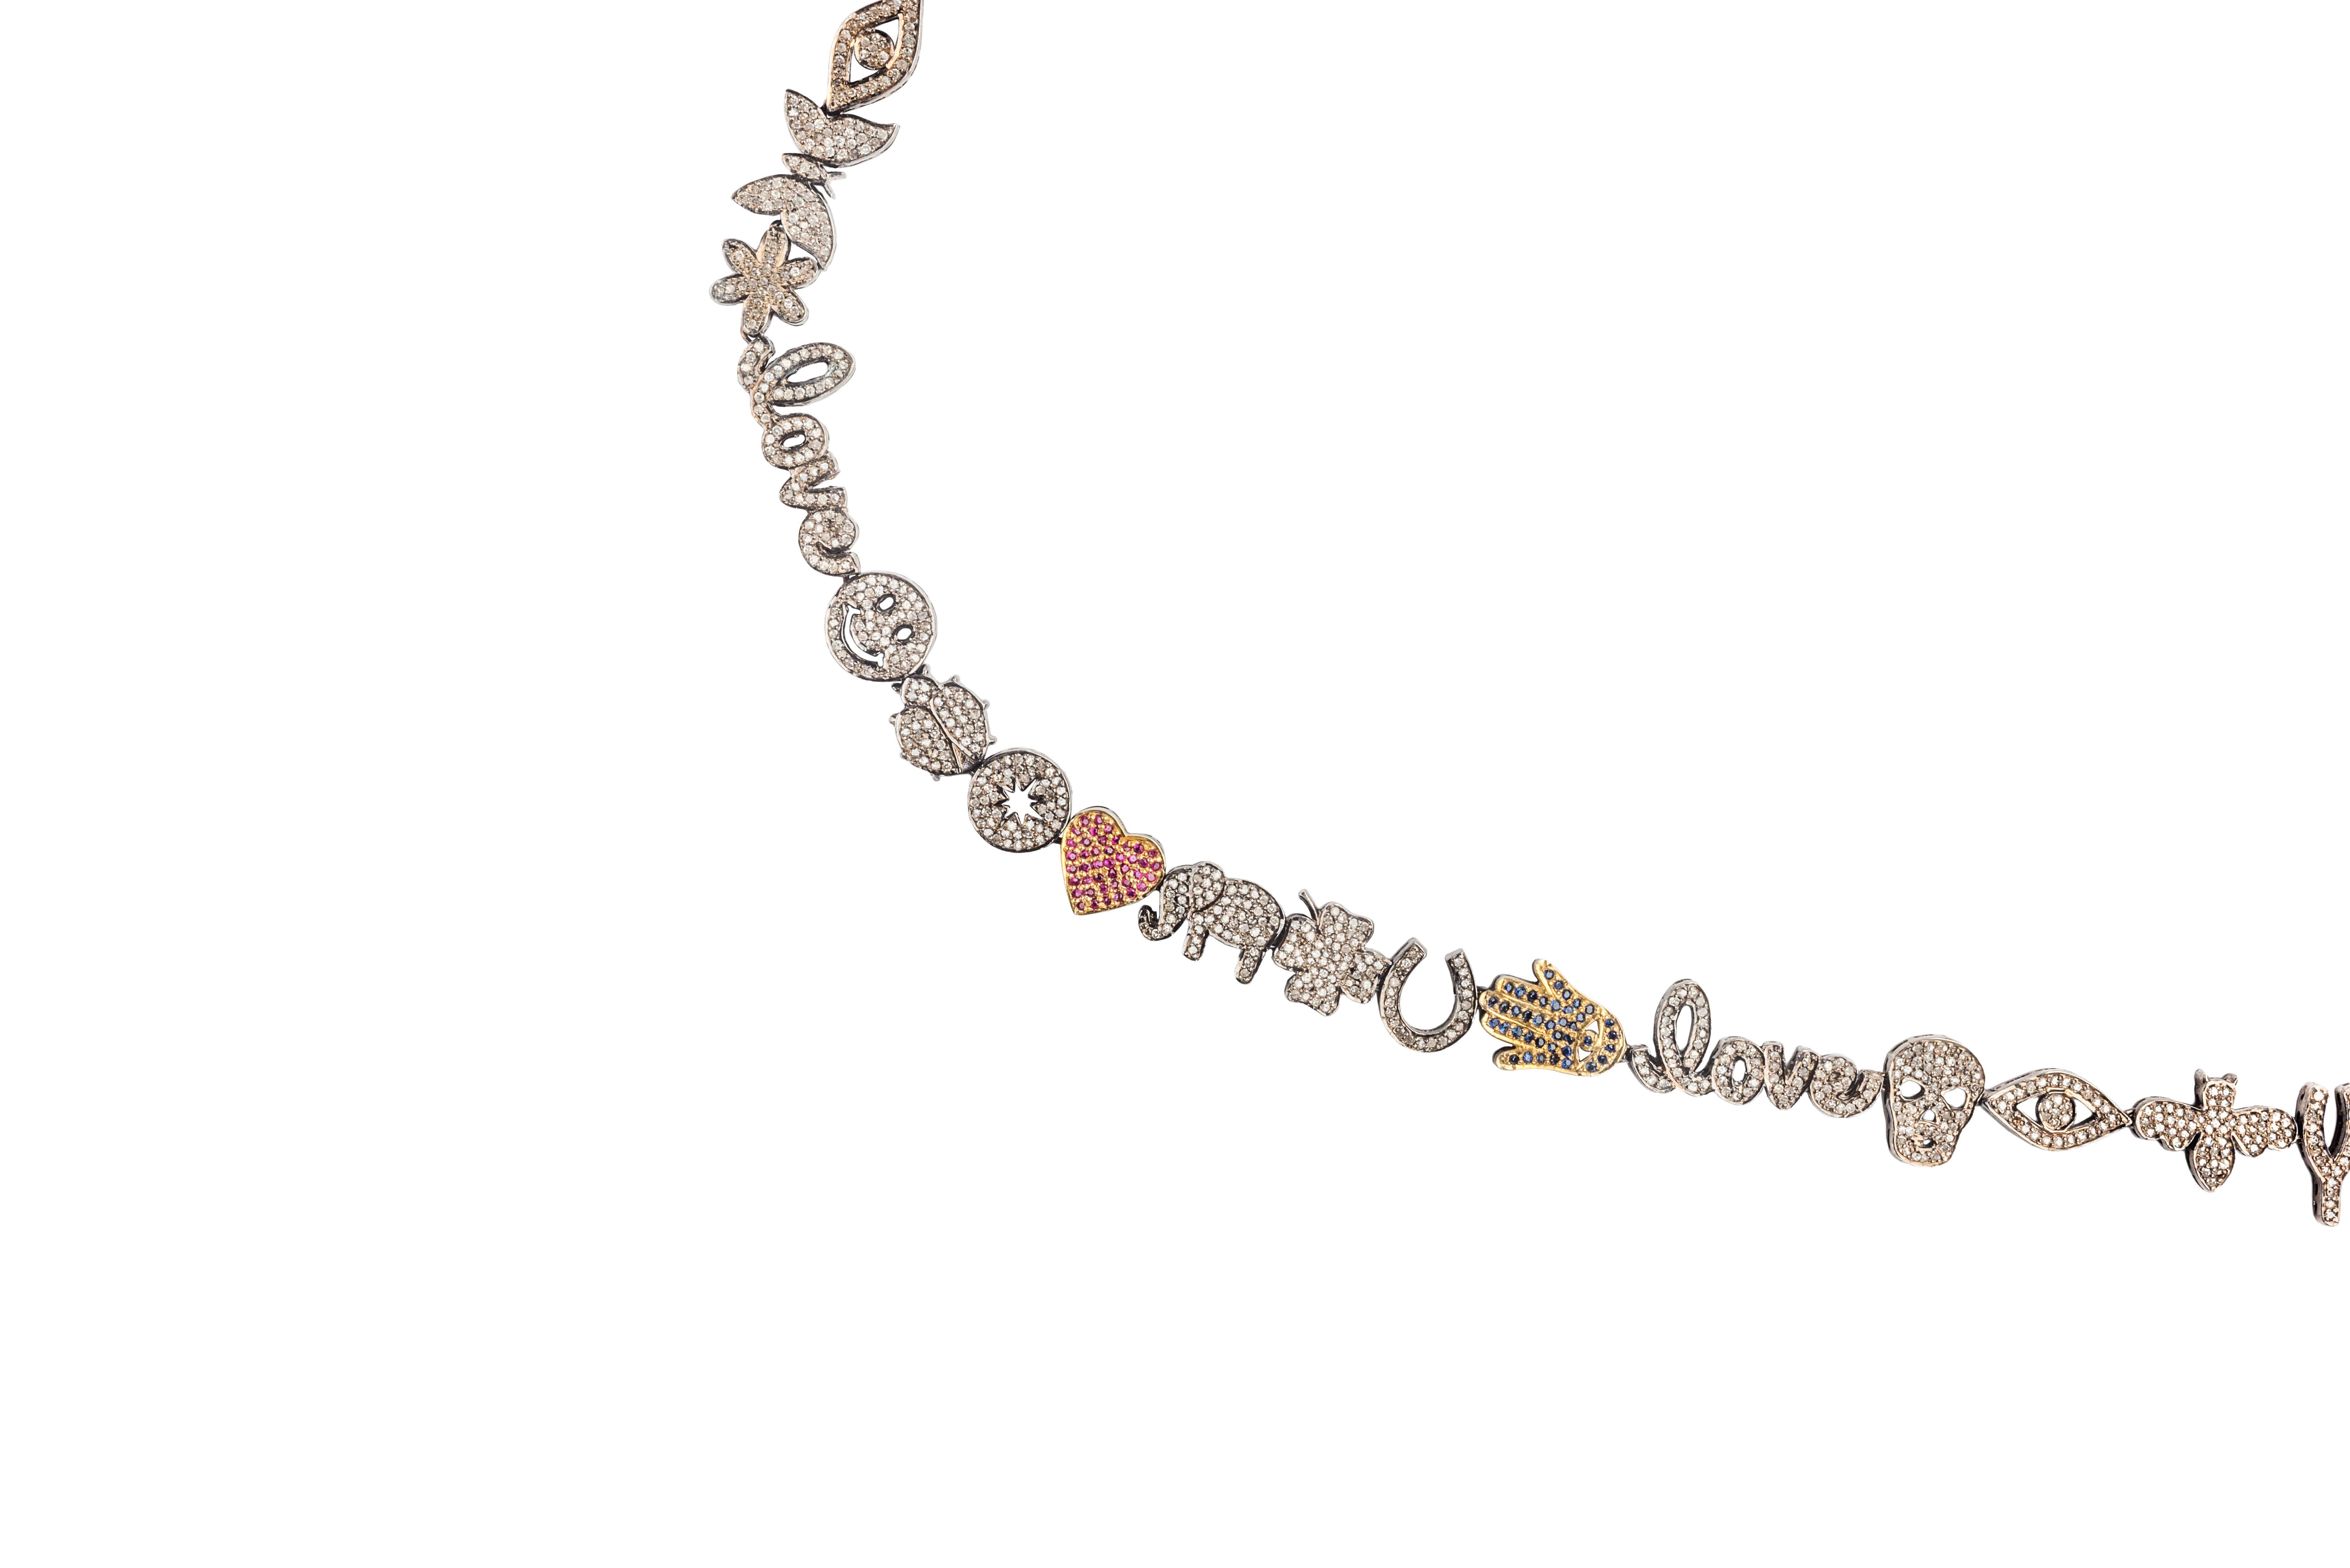 Contemporary Clarissa Bronfman Diamond 'Emoji' Necklace 